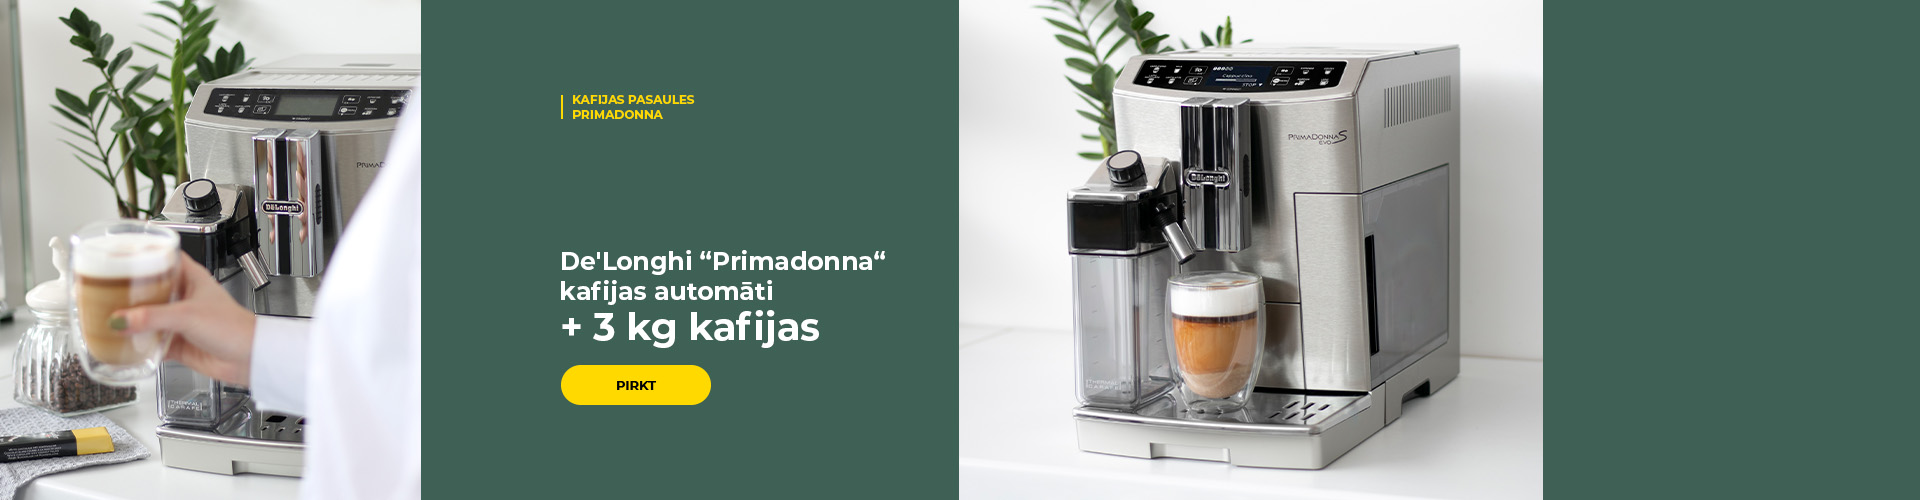 De'Longhi “Primadonna“ kafijas automāti + 3 kg kafijas